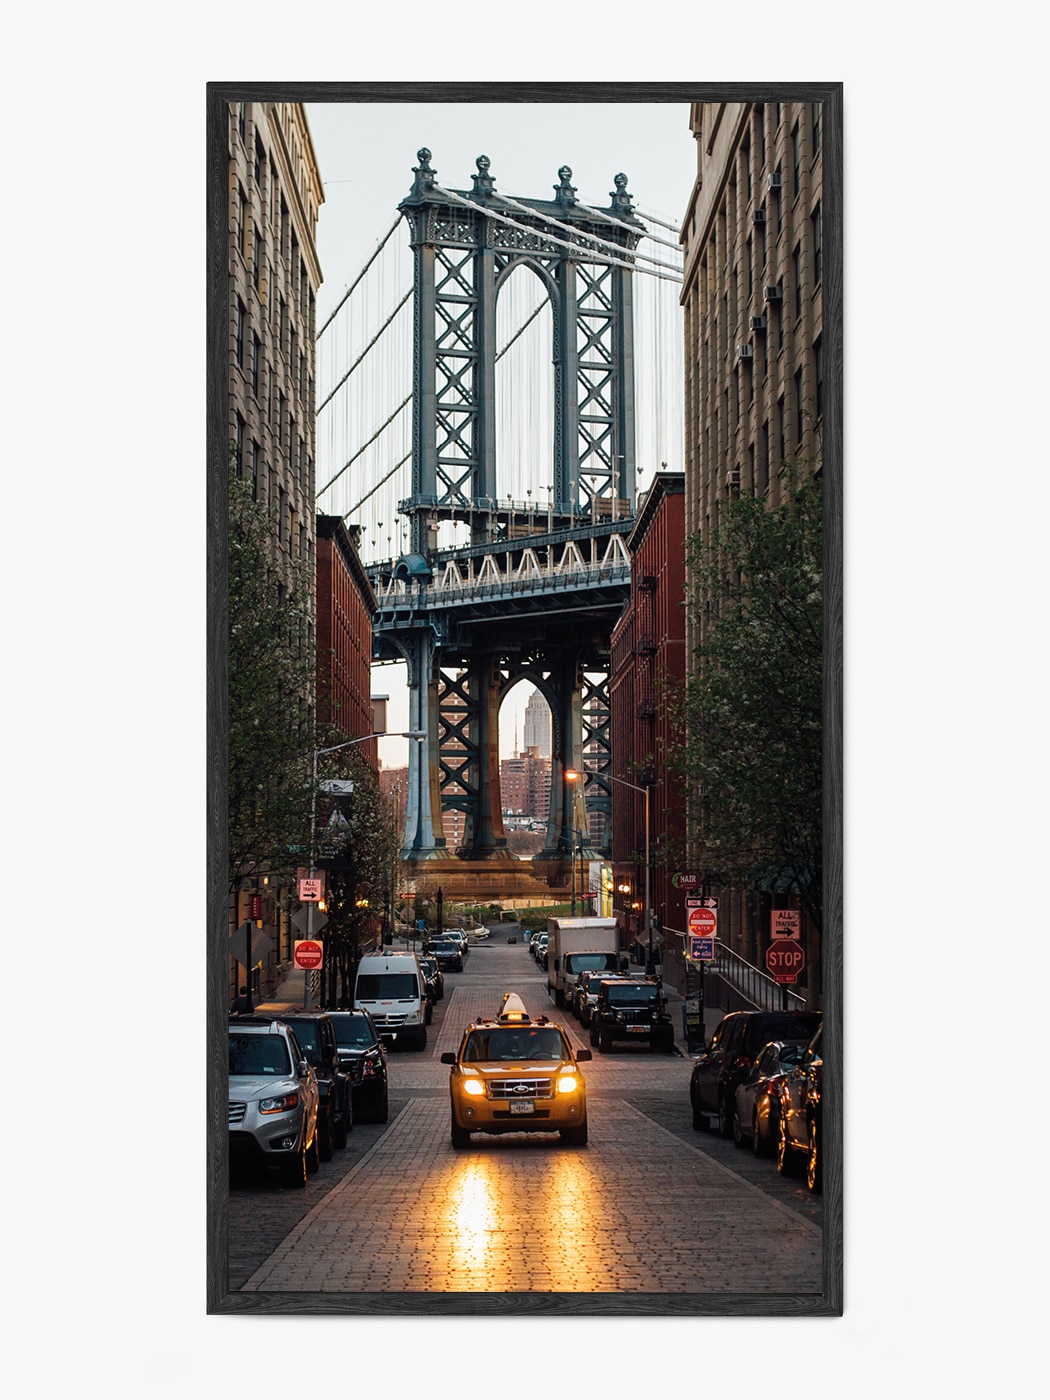 Obraz akustyczny ze zdjęcia - Żółta nowojorska taksówka na tle mostu brooklyńskiego w Nowym Jorku - Łukasz Popielarczyk - Łukasz Popielarczyk